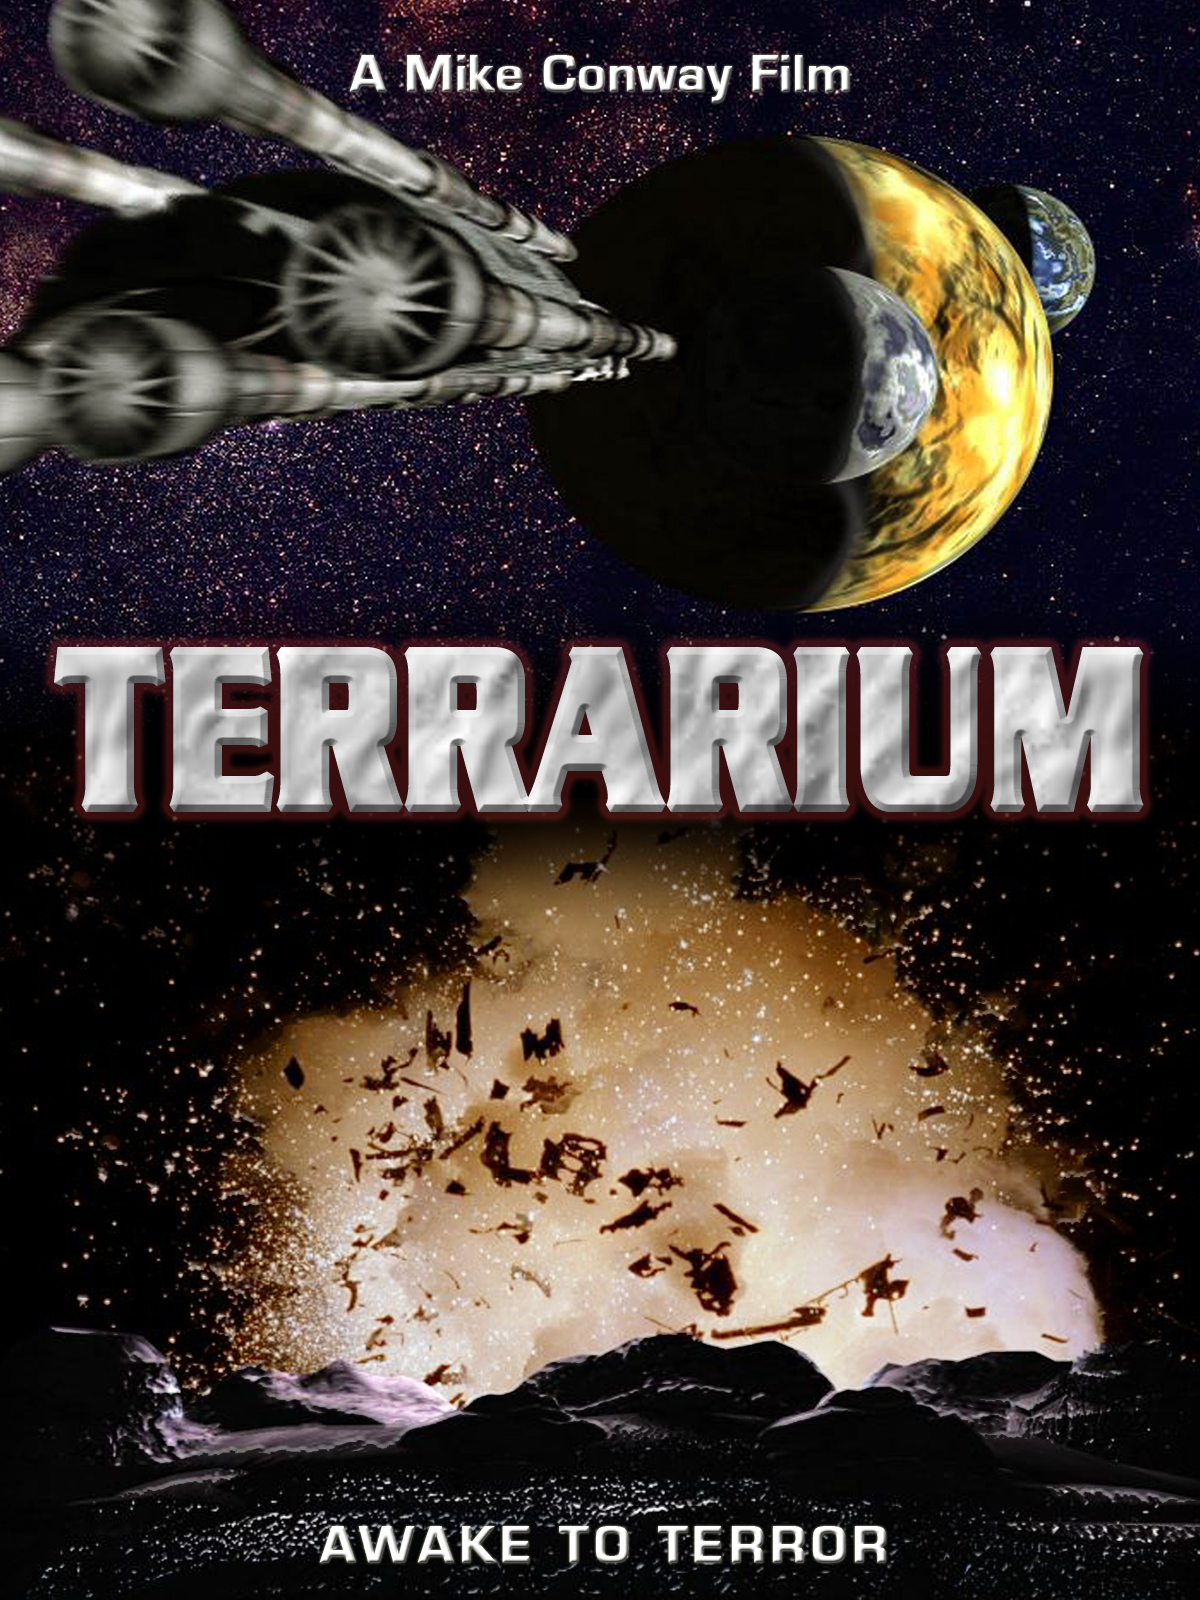 Terrarium (2003) Screenshot 3 